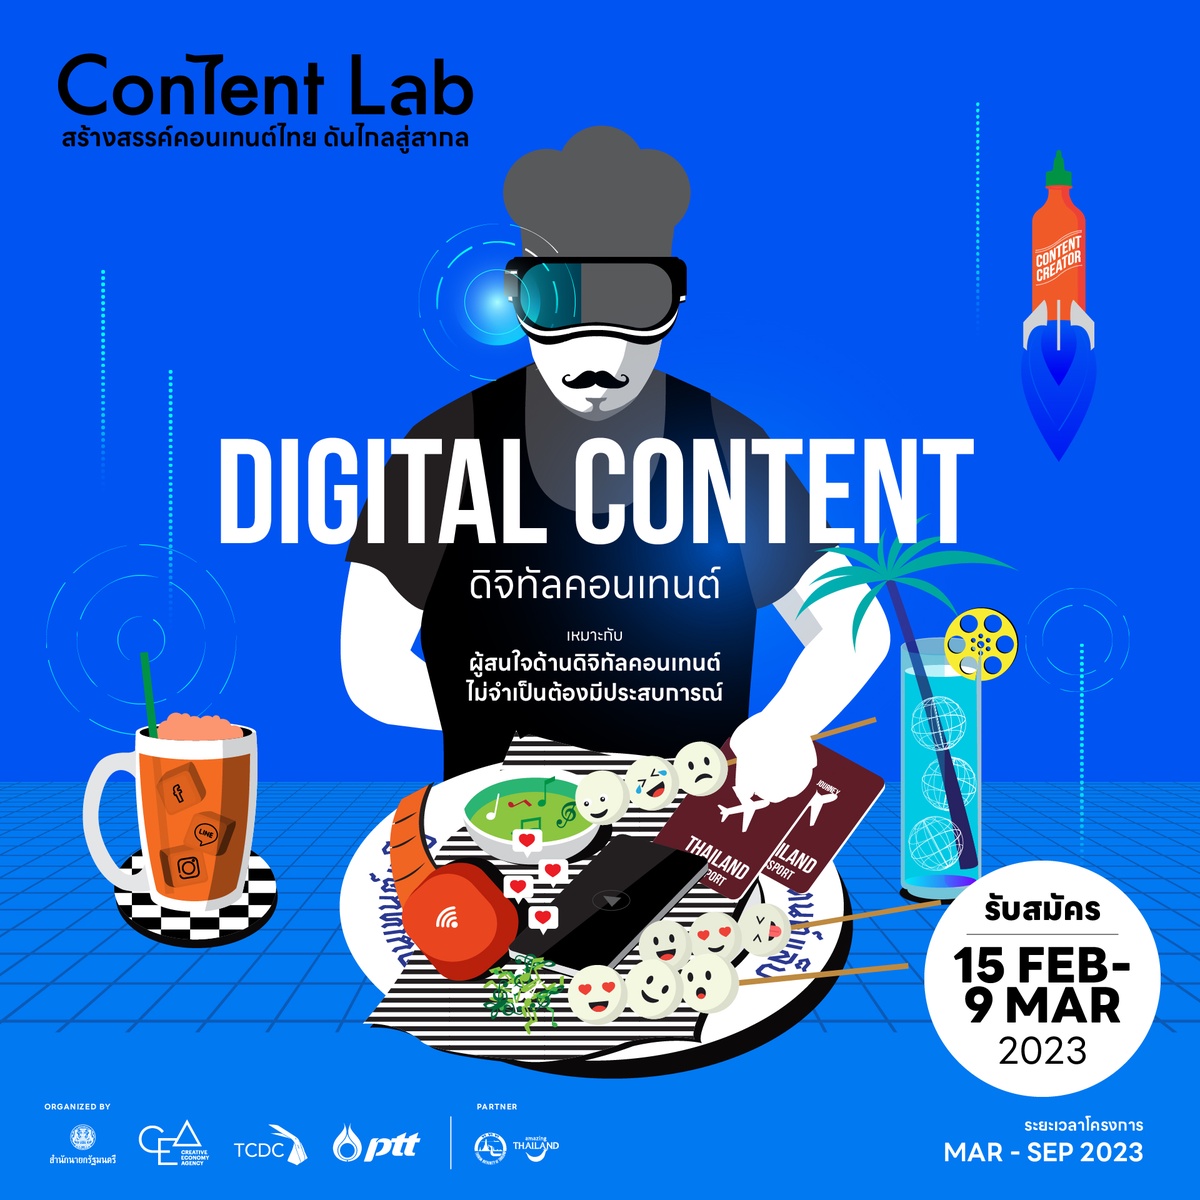 เปิดรับสมัครแล้ว!! โครงการ Content Lab กับห้องปฏิบัติการสร้างสรรค์ดิจิทัลคอนเทนต์ เรียนรู้ทักษะการใช้เทคโนโลยีสุดเข้มข้นกับกูรูชั้นนำของเมืองไทย